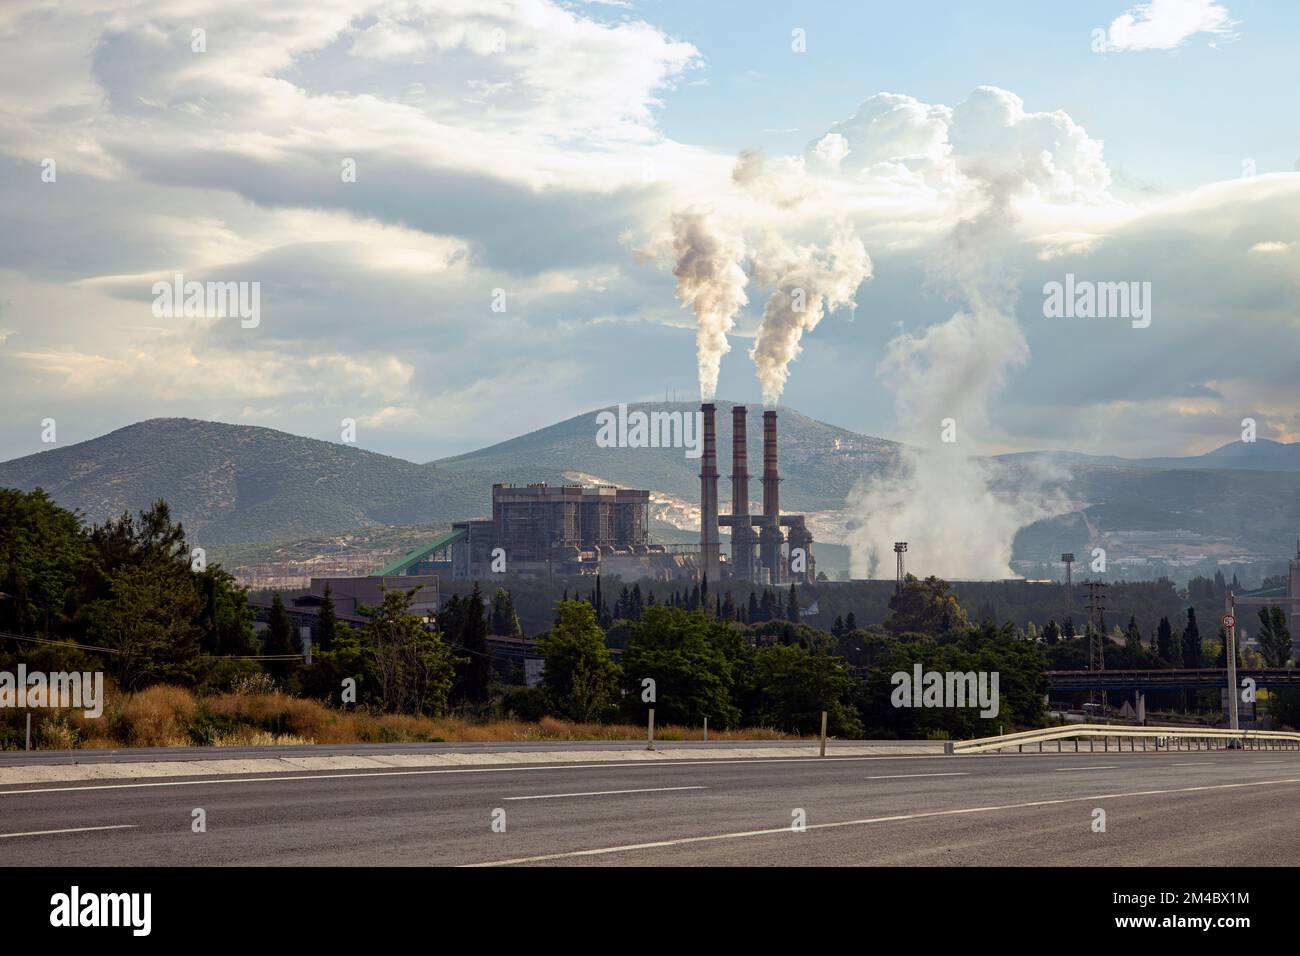 Yatagan-Wärmekraftwerk und Kamine von Kraftwerken Stockfoto